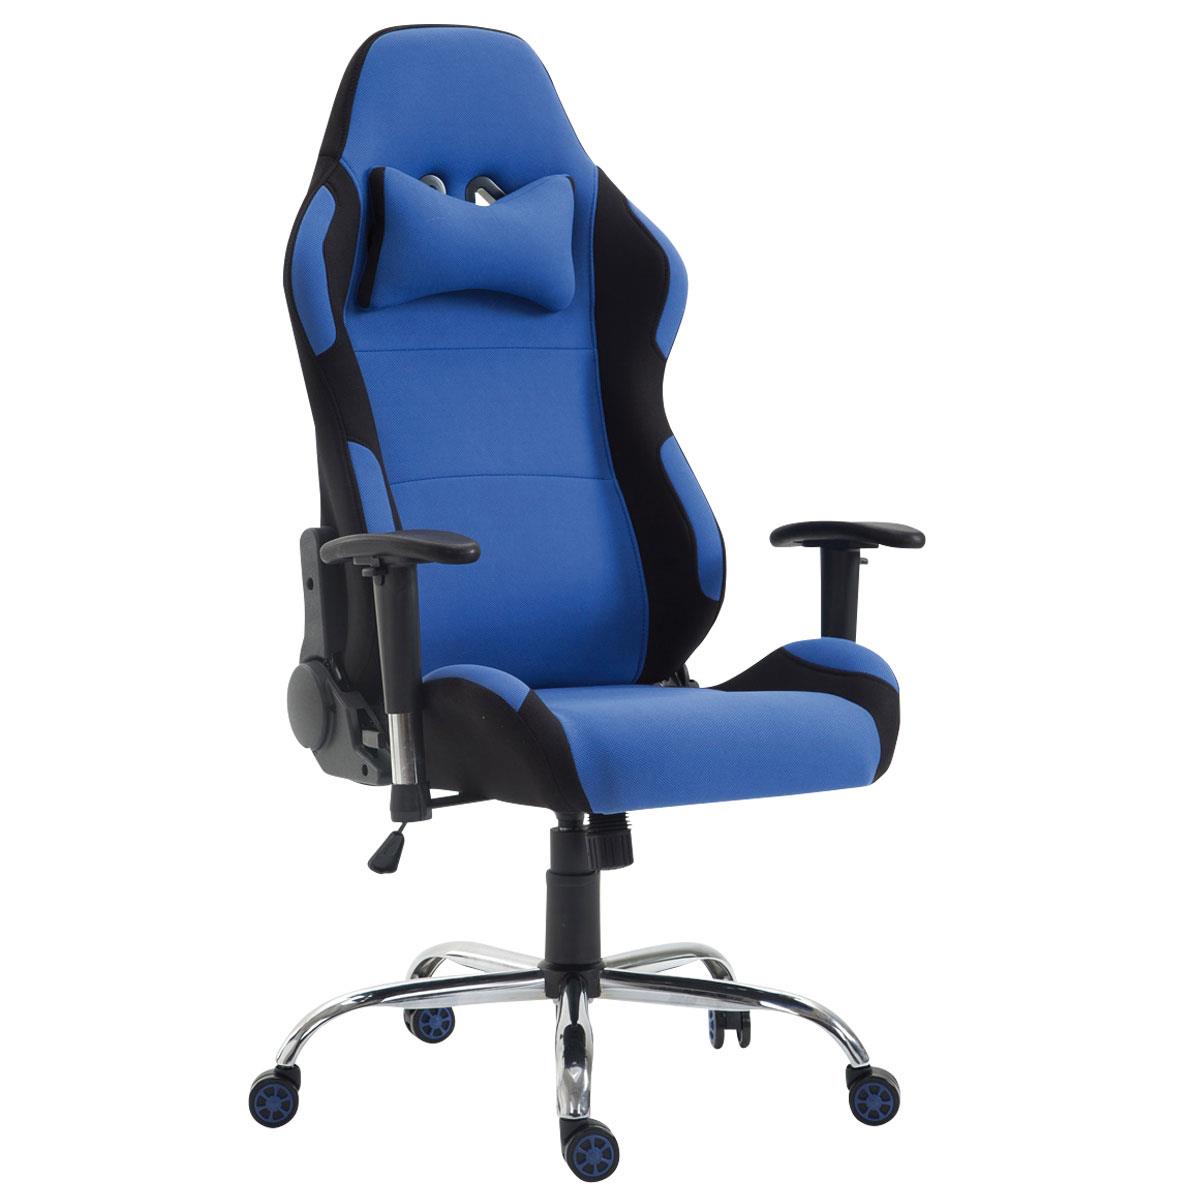 Cadeira Gaming ROSBY PANO, Design Desportivo e Muito Confortável, Cor Azul